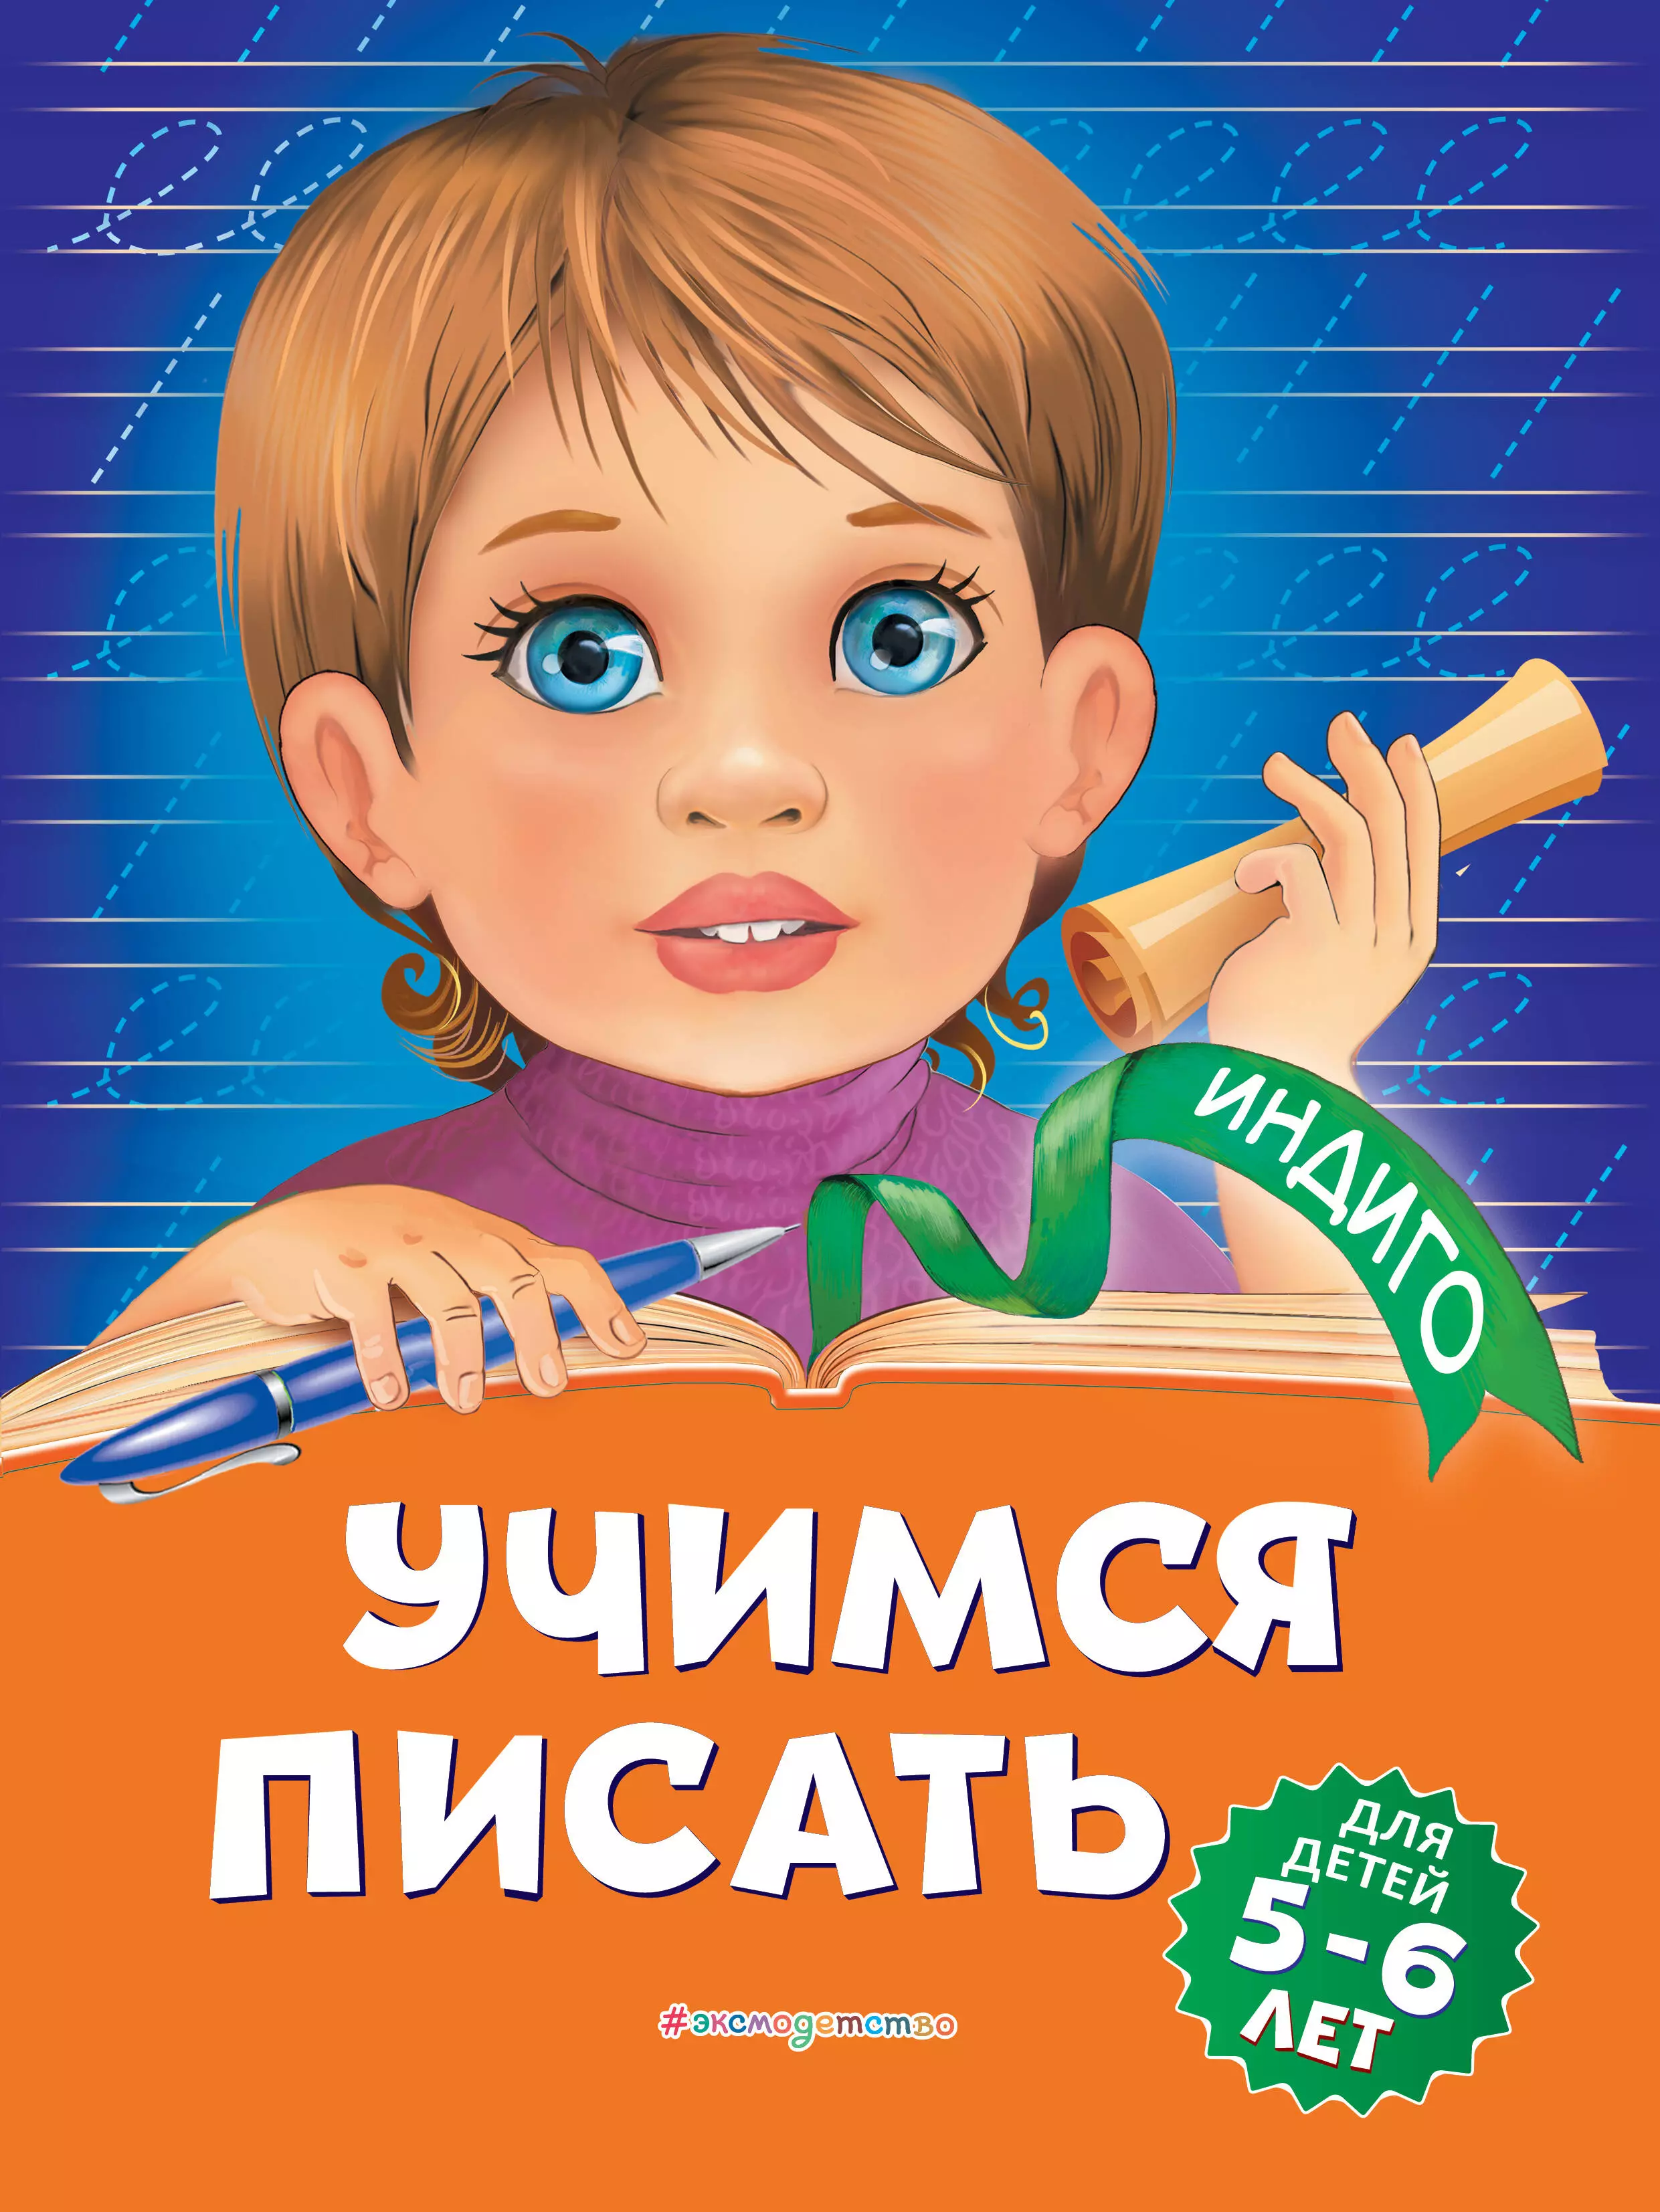 Пономарева Алла Владимировна - Учимся писать: для детей 5-6 лет